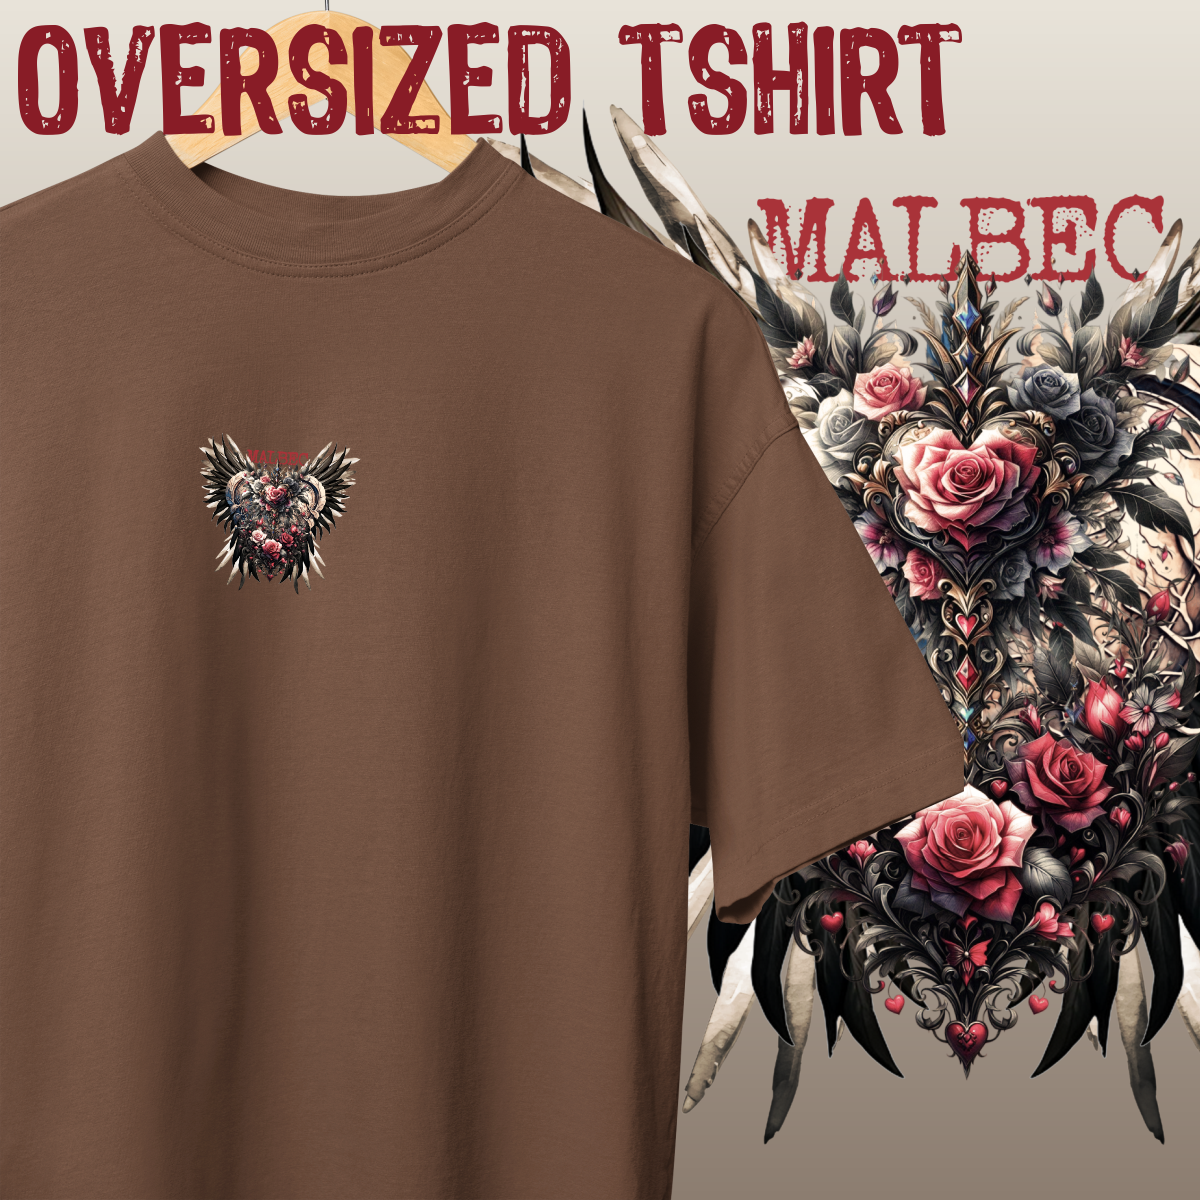 Nome do produto: Oversized Tshirt - MINI MALBEC - Seremcores